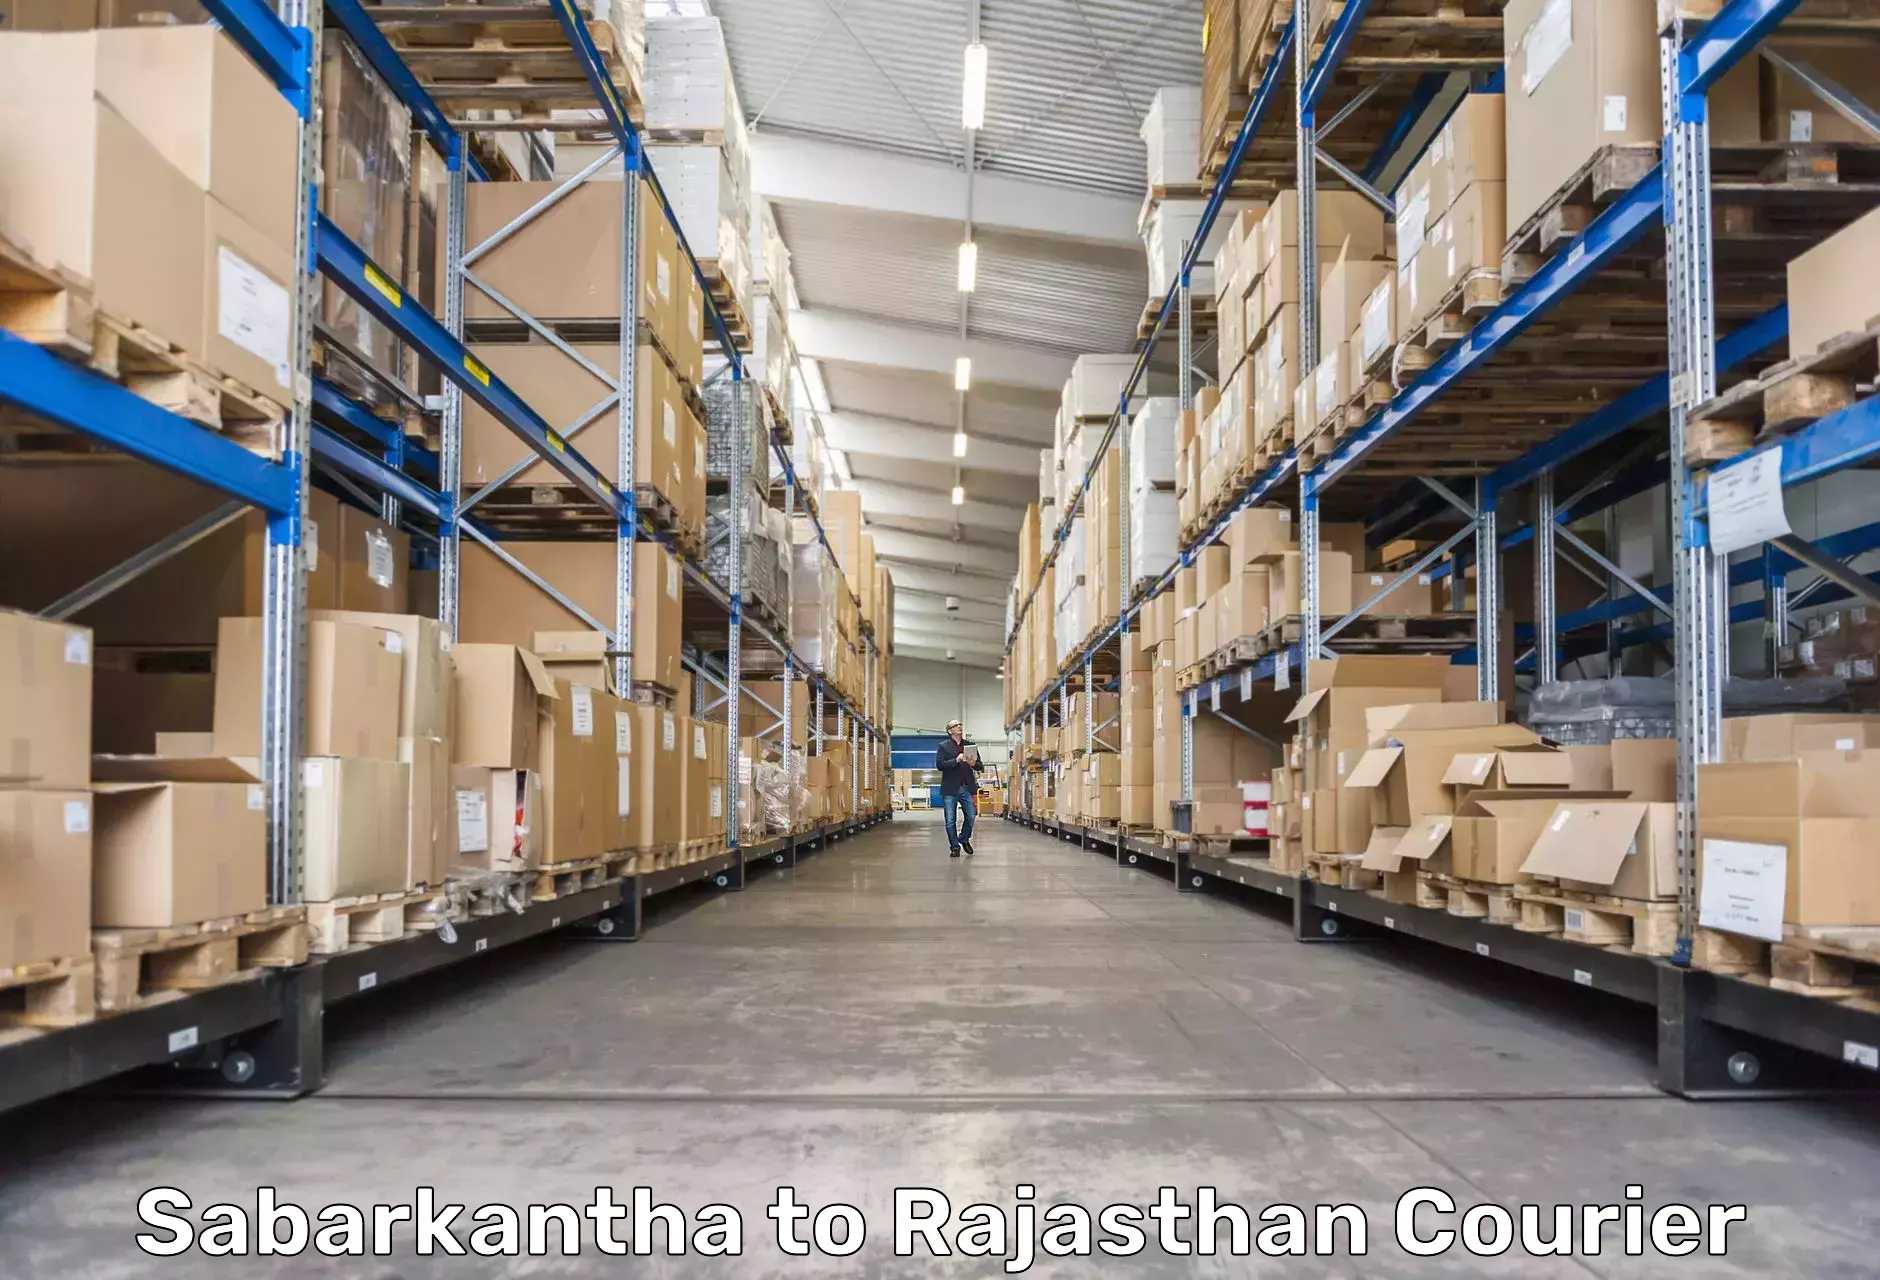 Customer-centric shipping Sabarkantha to Mandalgarh